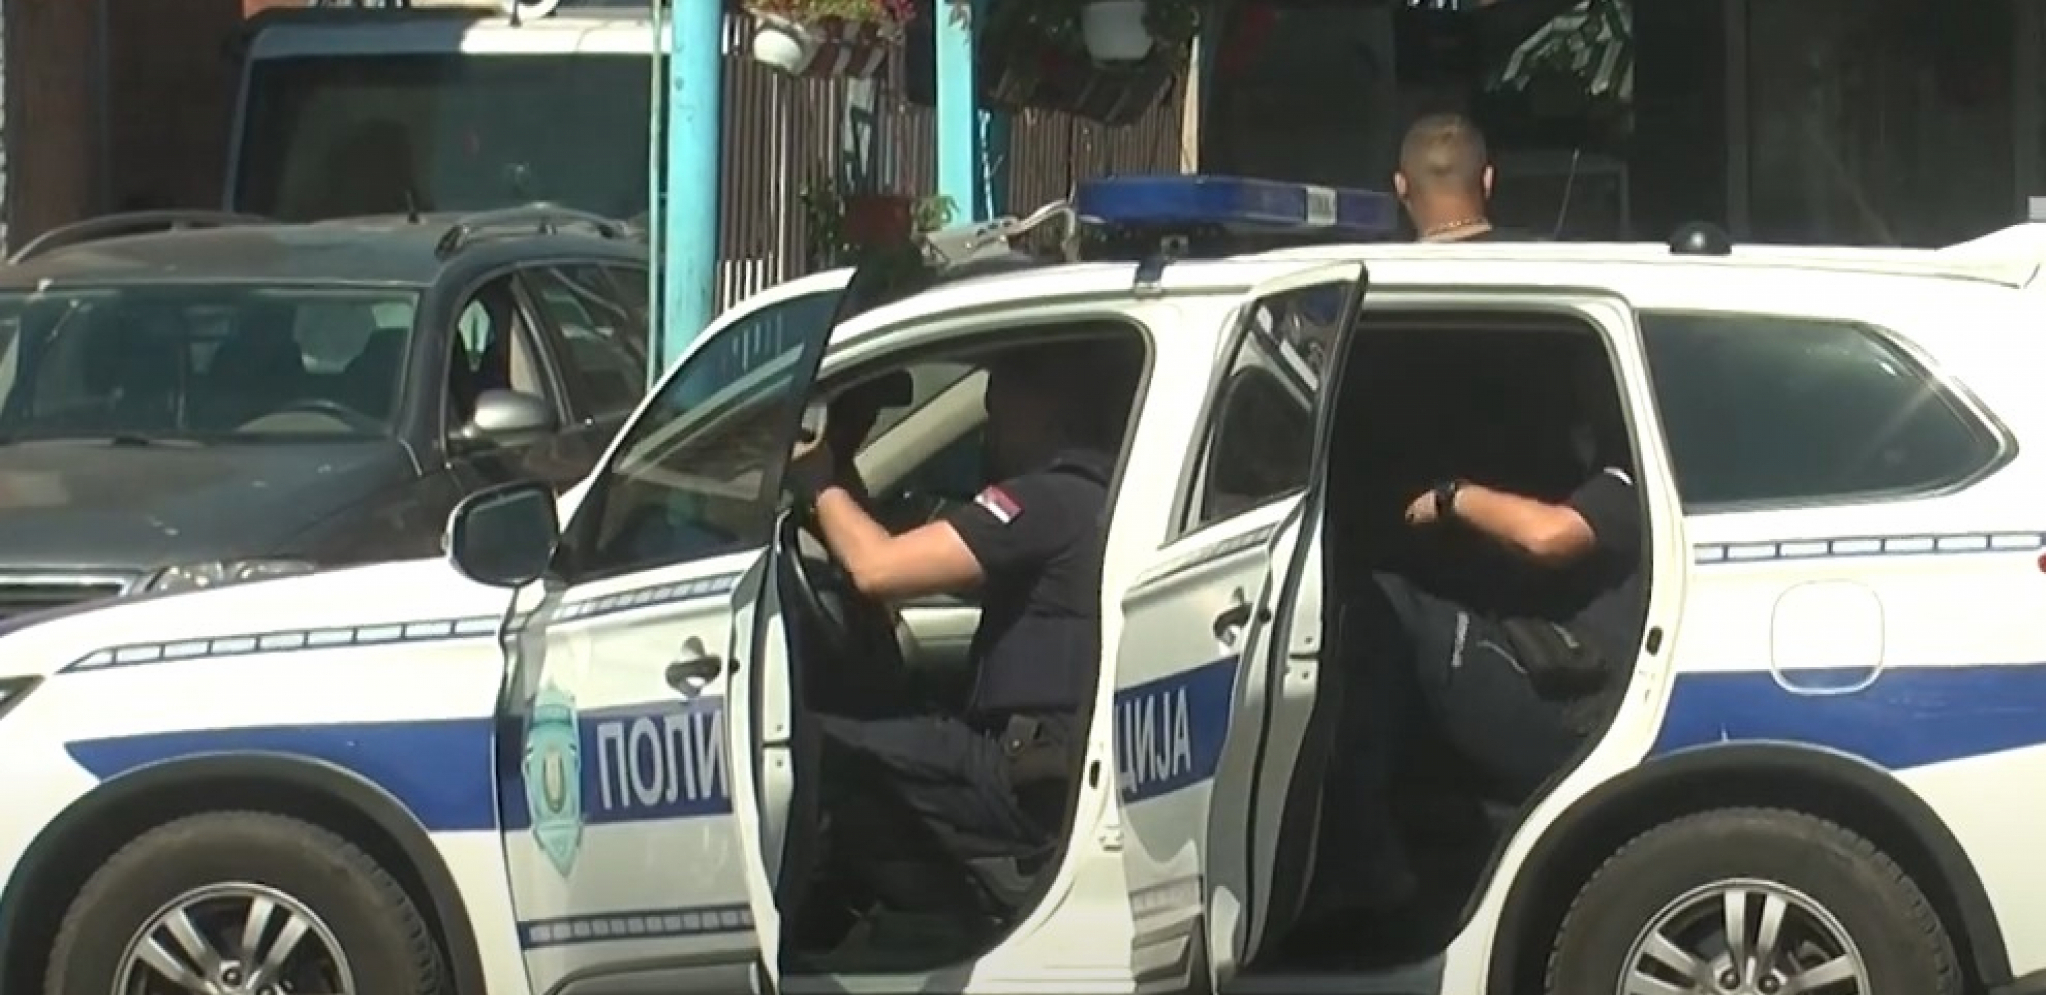 POLICIJA PRONAŠLA DROGU NA NEVEROVATNOM MESTU Penzioner iz Beograda skrivao milion evra u kući na Vračaru